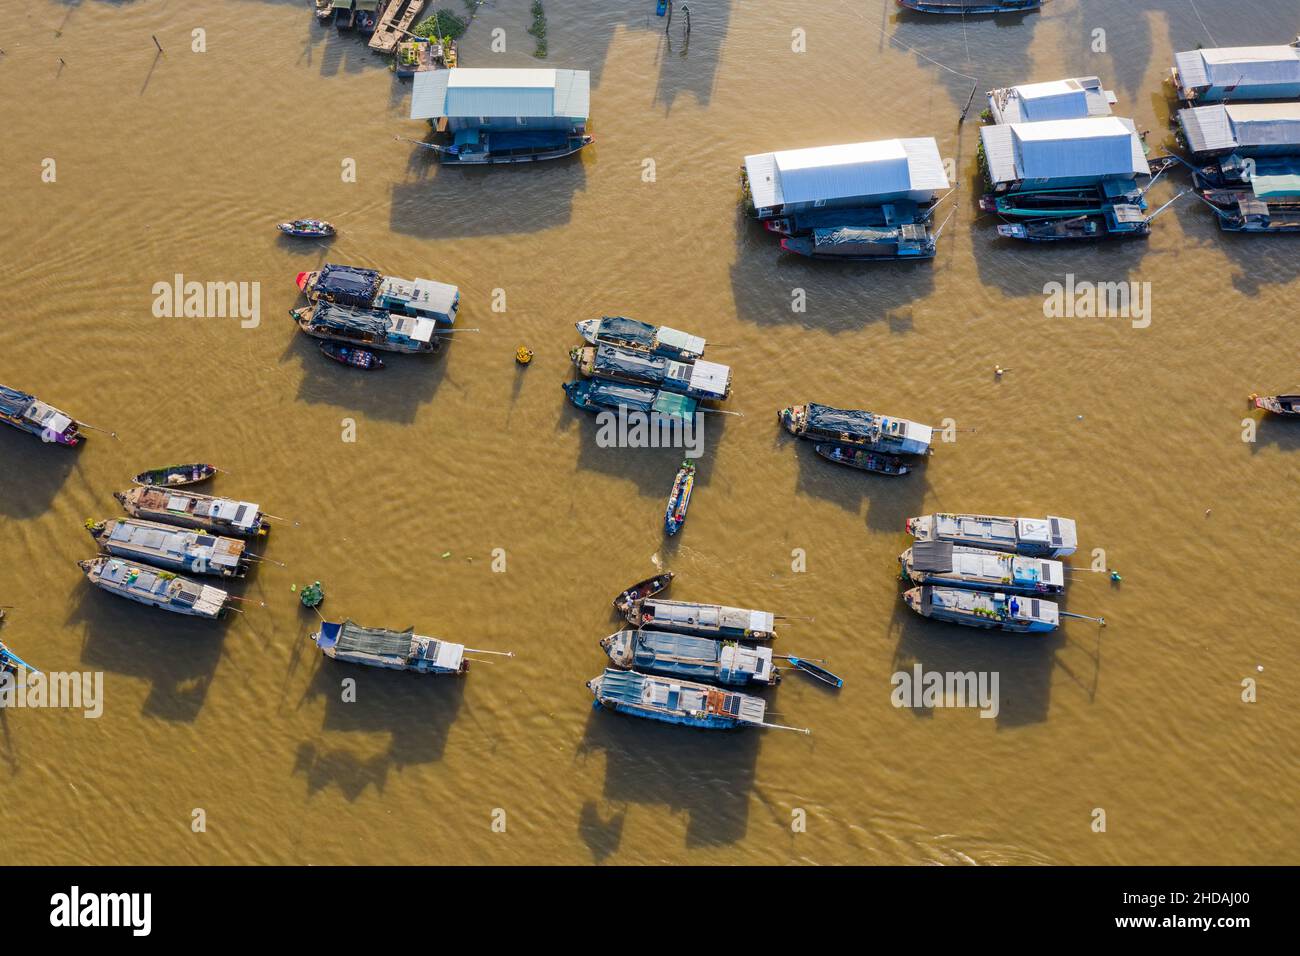 Il mercato galleggiante Cai Rang è vuoto di turisti e venditori e acquirenti sono ridotti in modo significativo durante la pandemia del covid-19 Foto Stock